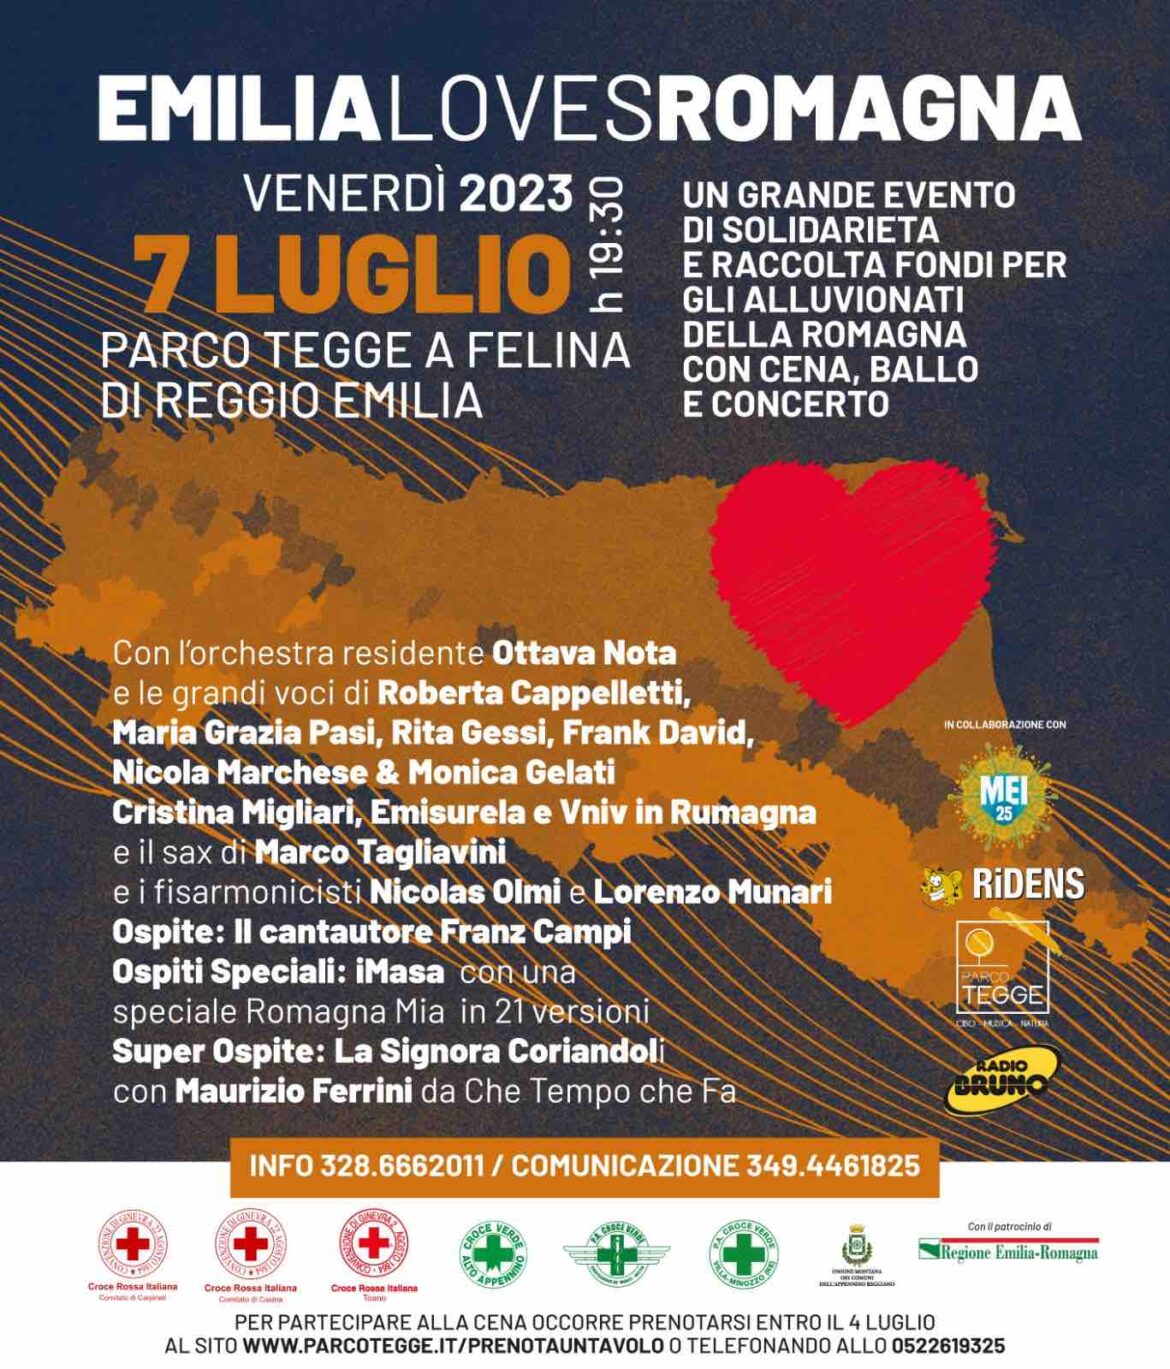 Venerdì 7 luglio al Parco Tegge di Felina di Reggio Emilia arriva Emilia Loves Romagna